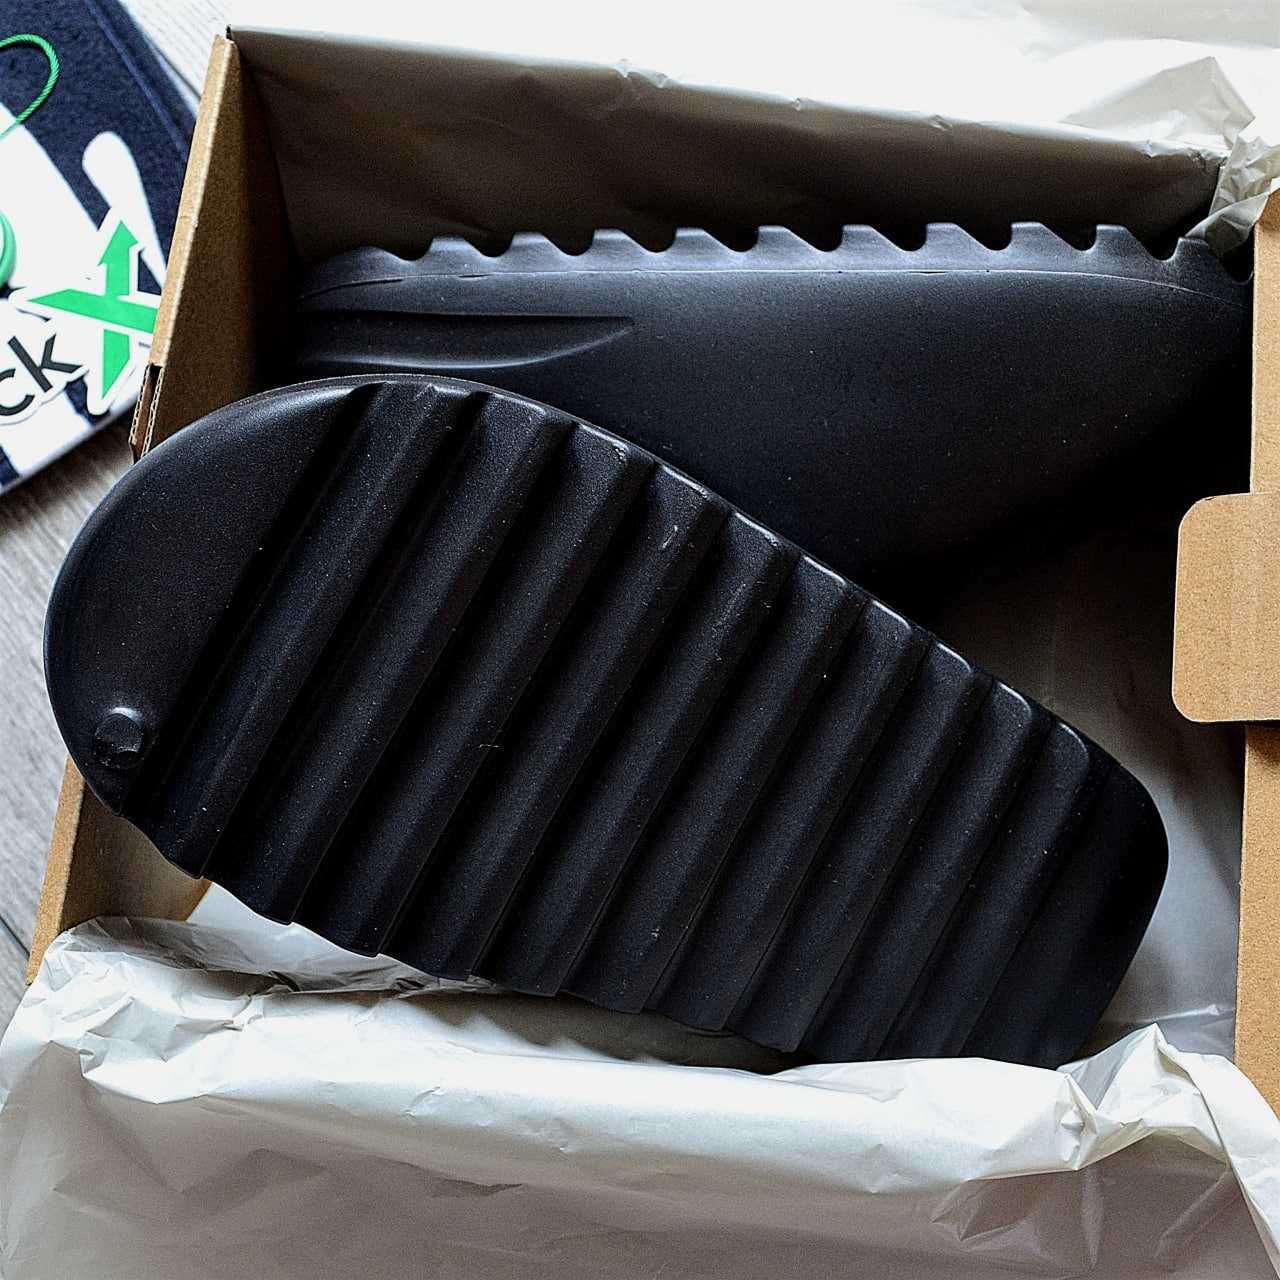 Buty Adidas Yeezy Slide "Black" rozmiar 36-45